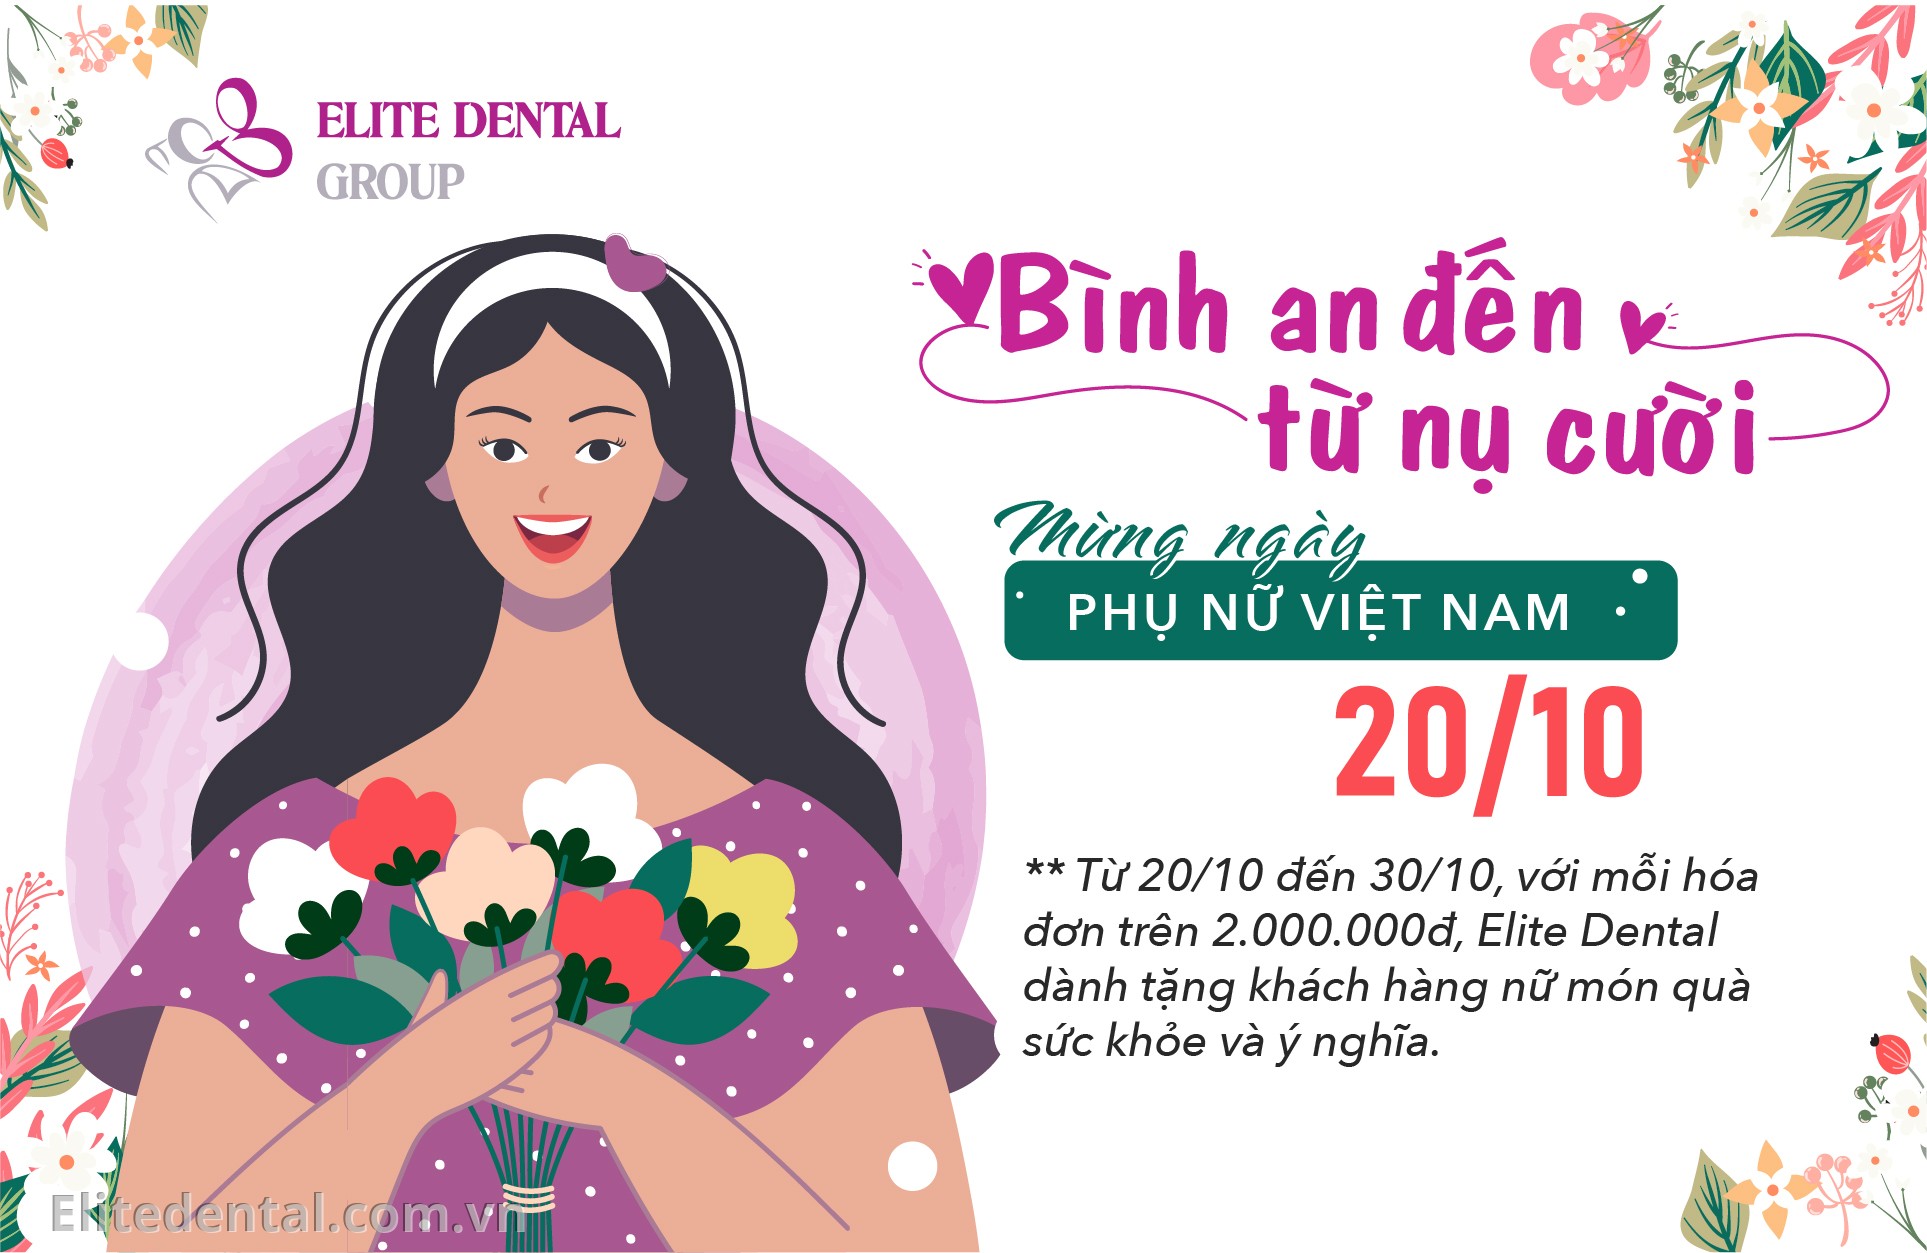 Top hình ảnh chúc mừng 20/10 ngày Phụ nữ Việt Nam miễn phí